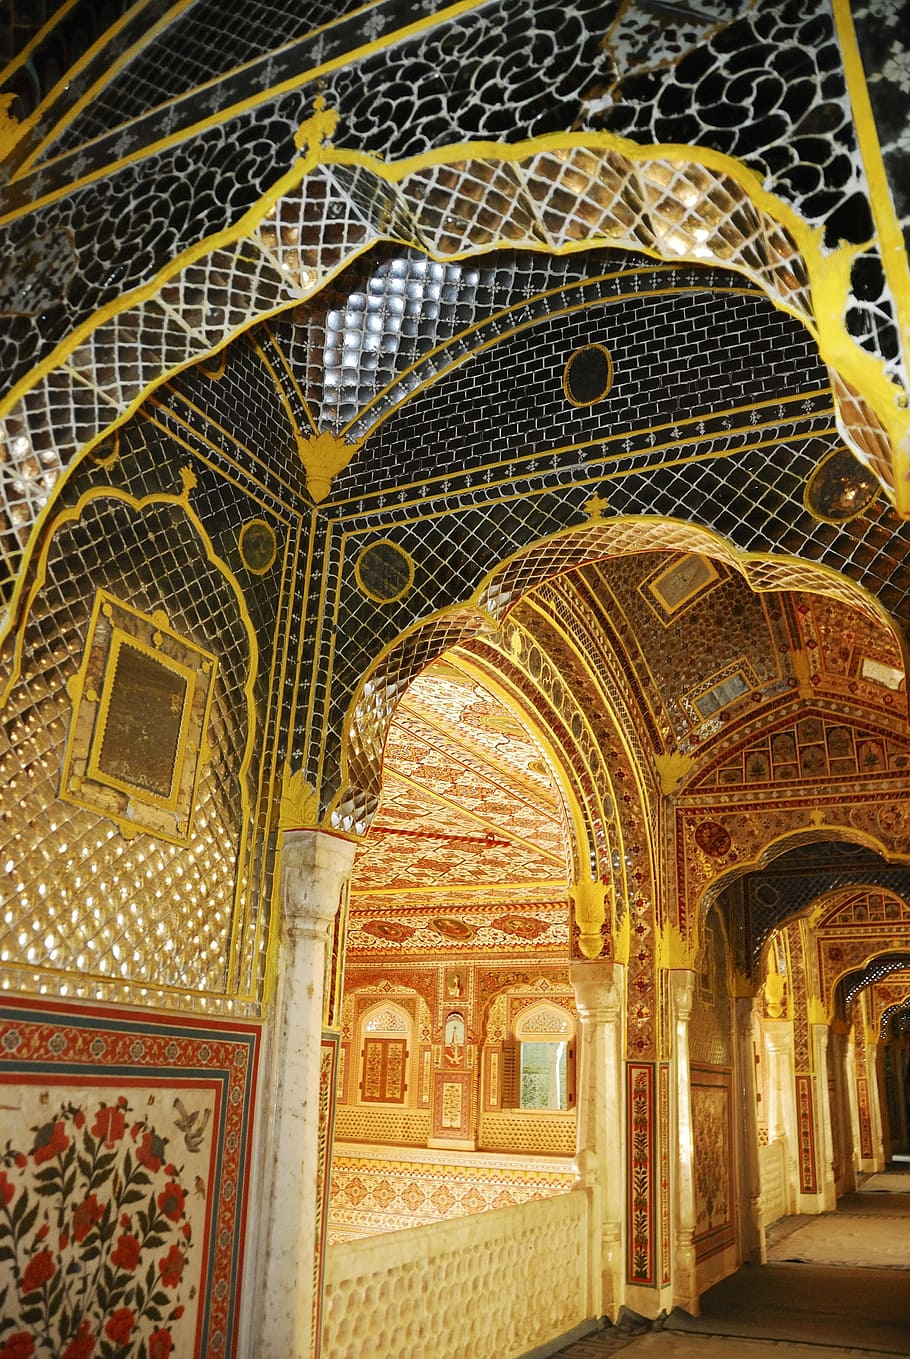 India, Asia, Rajasthan, viajes, palacio, este, arquitectura, arco, destinos de viaje, ornamentados